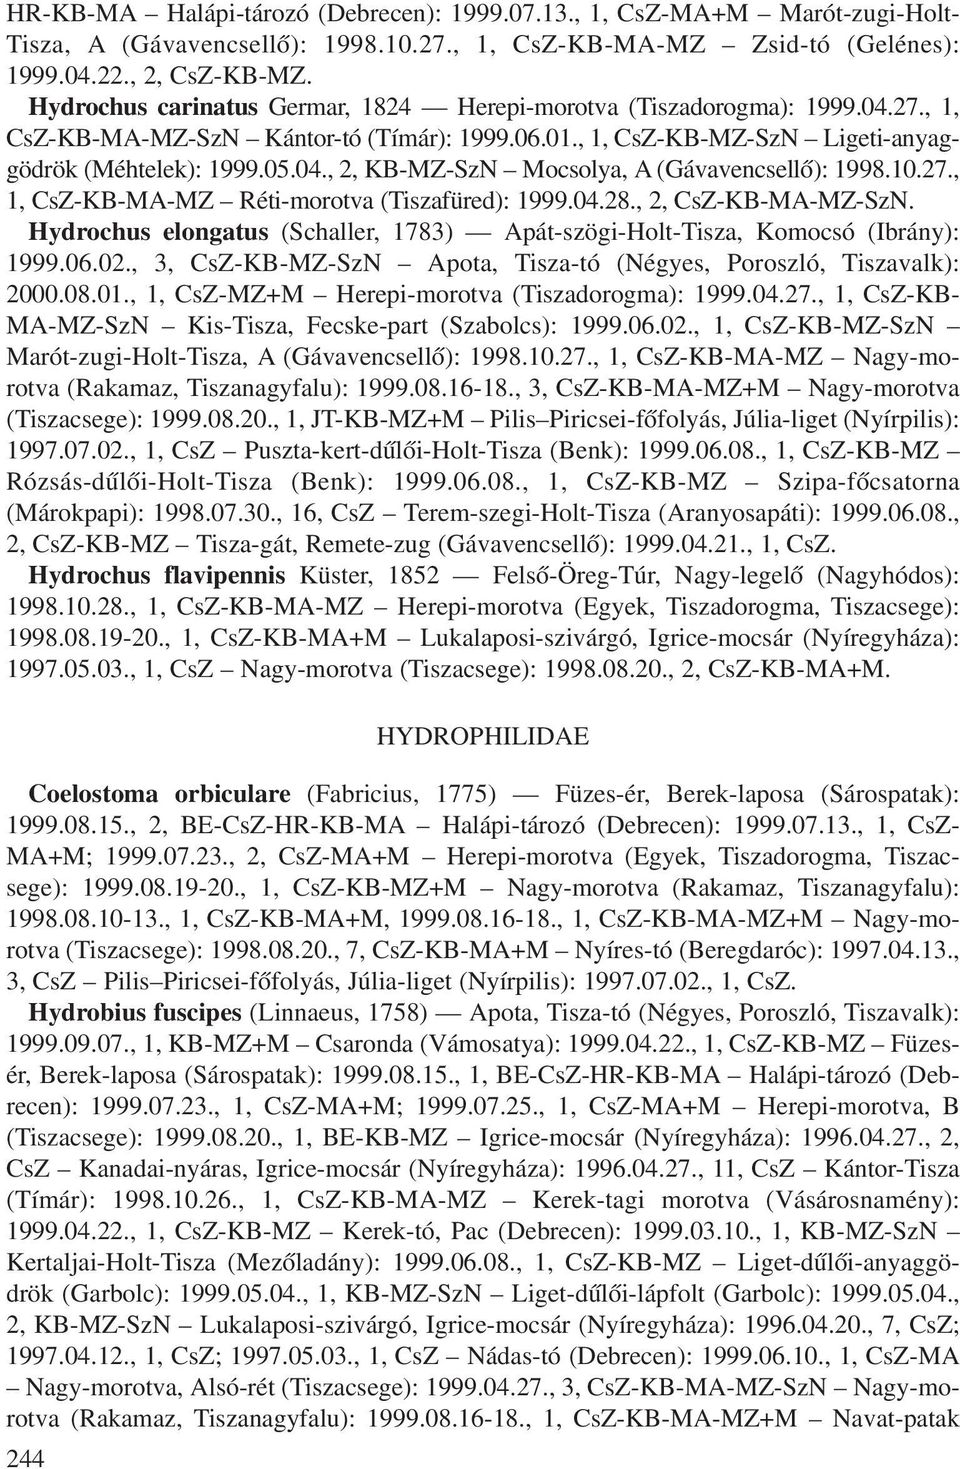 10.27., 1, CsZ-KB-MA-MZ Réti-morotva (Tiszafüred): 1999.04.28., 2, CsZ-KB-MA-MZ-SzN. Hydrochus elongatus (Schaller, 1783) Apát-szögi-Holt-Tisza, Komocsó (Ibrány): 1999.06.02.